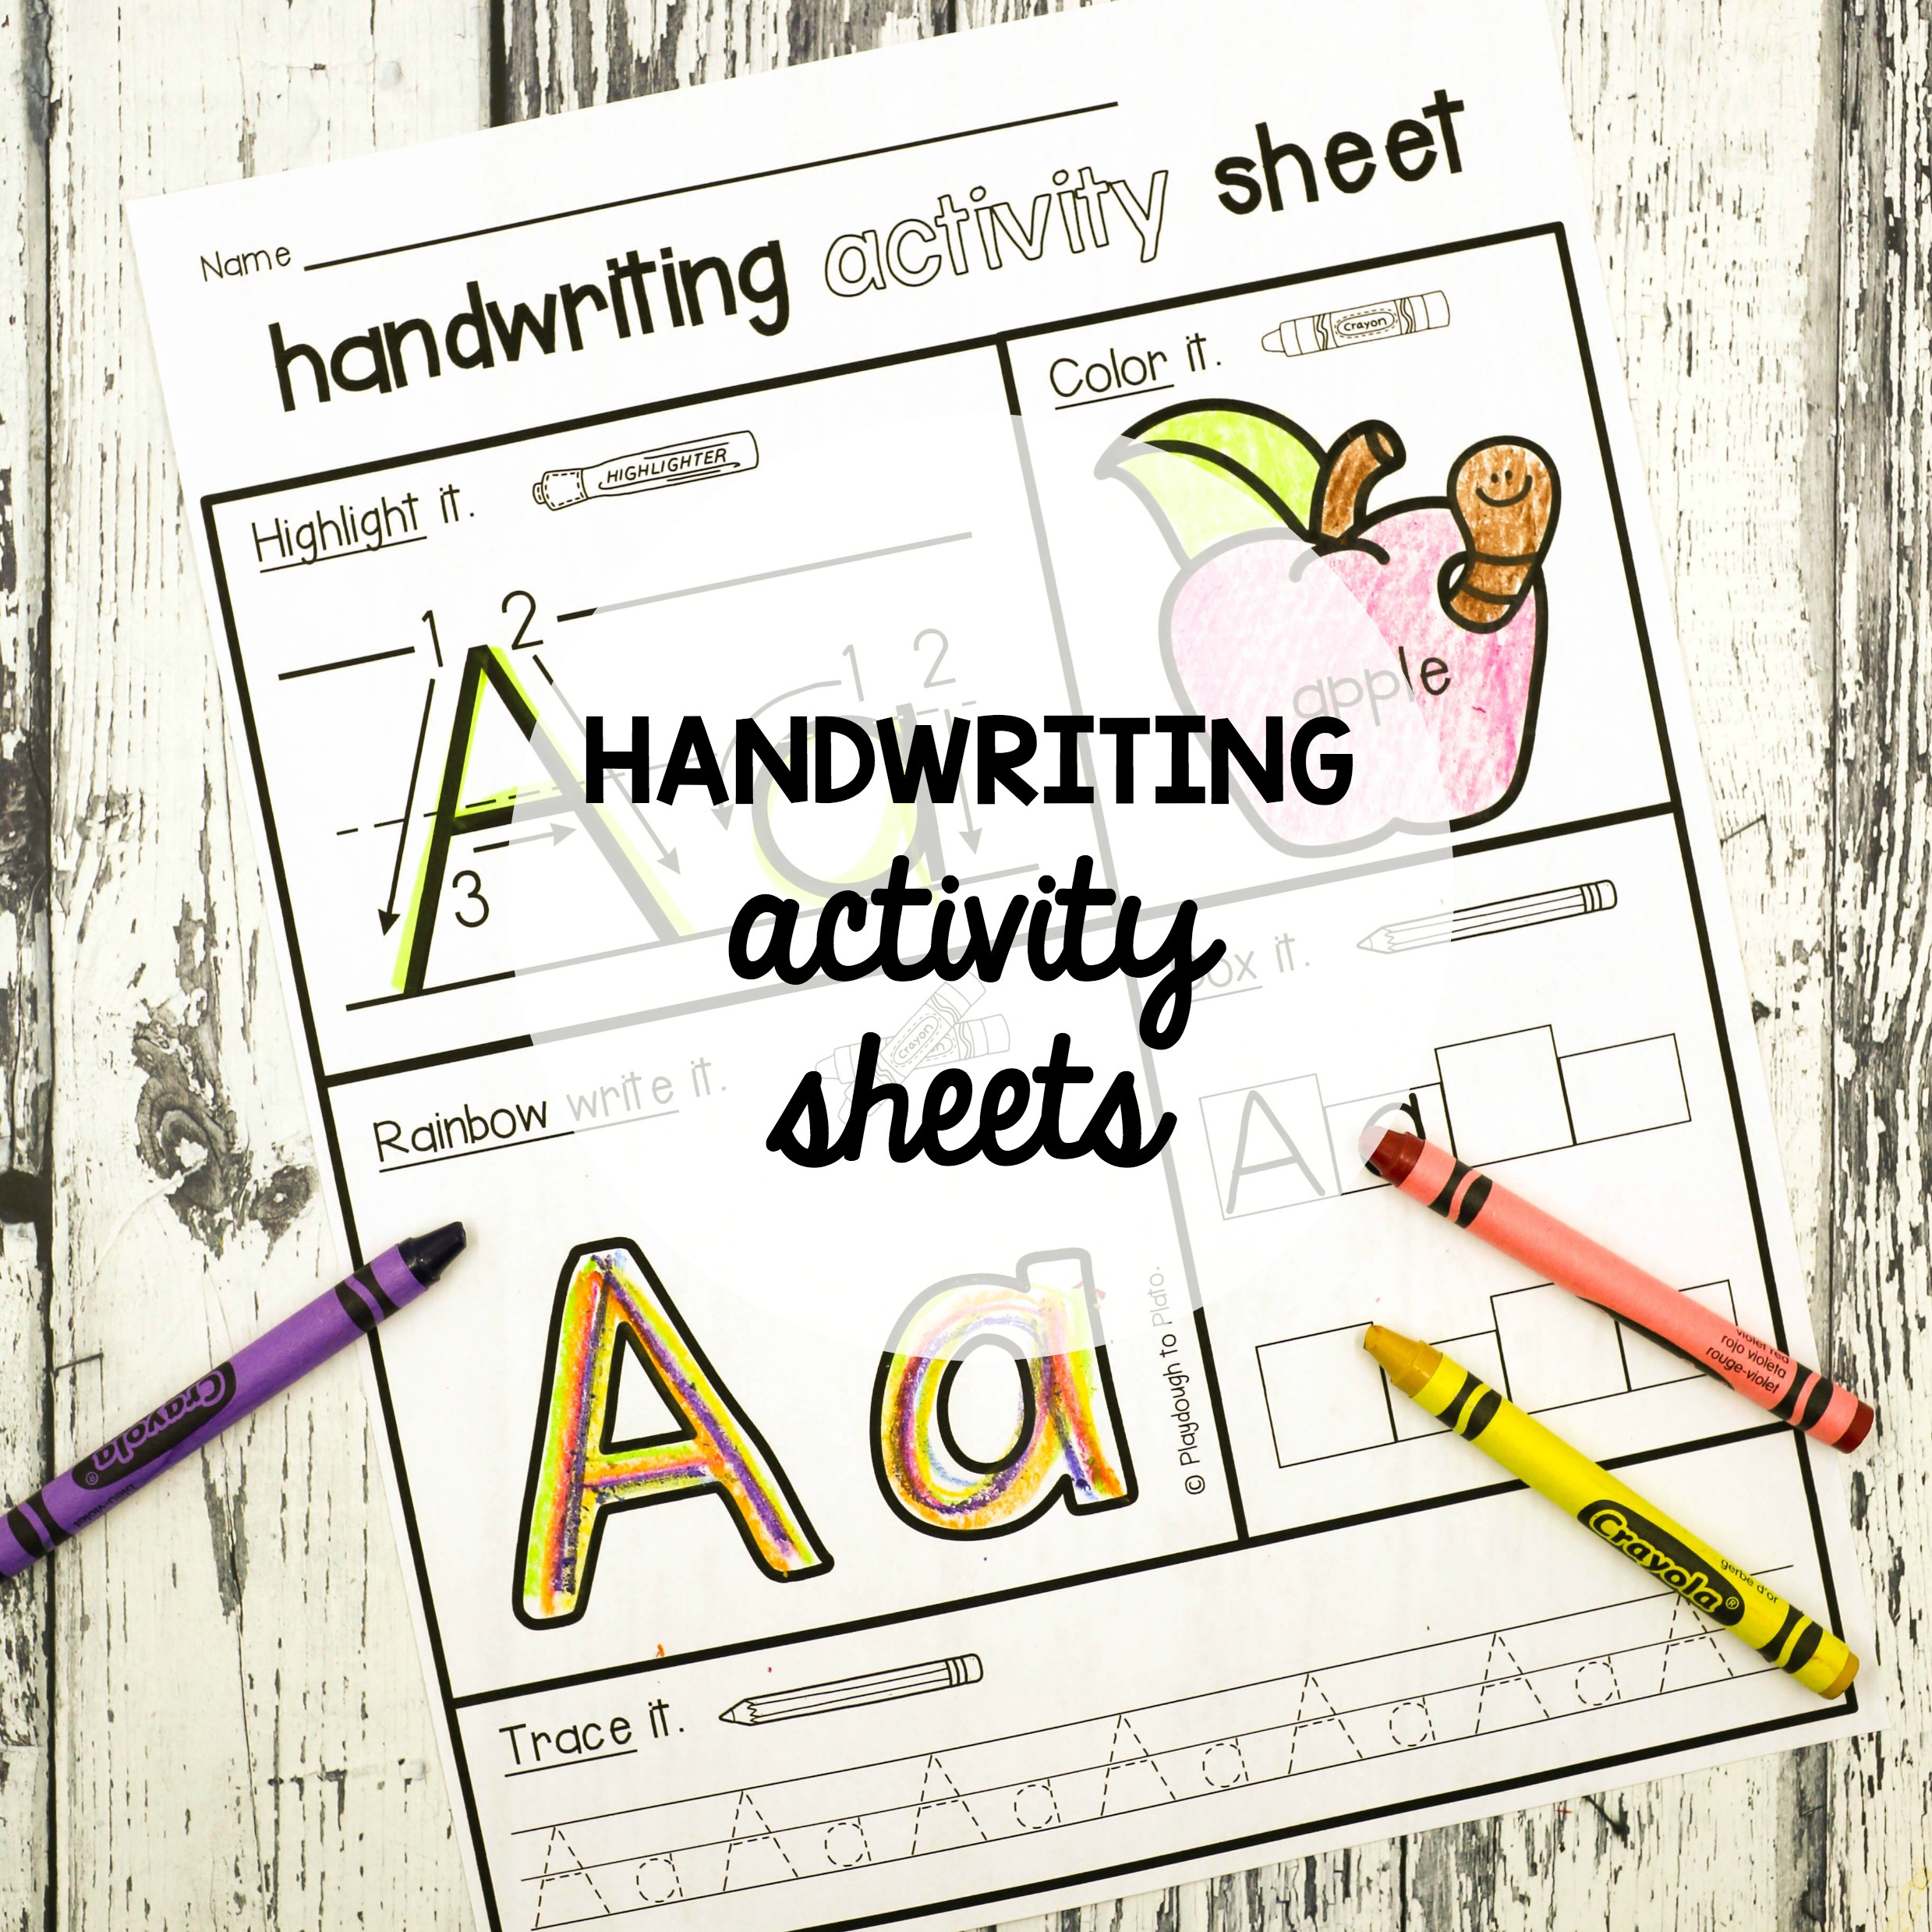 Writing activity 4. Handwriting activity. Writing activities. Guided writing activities.